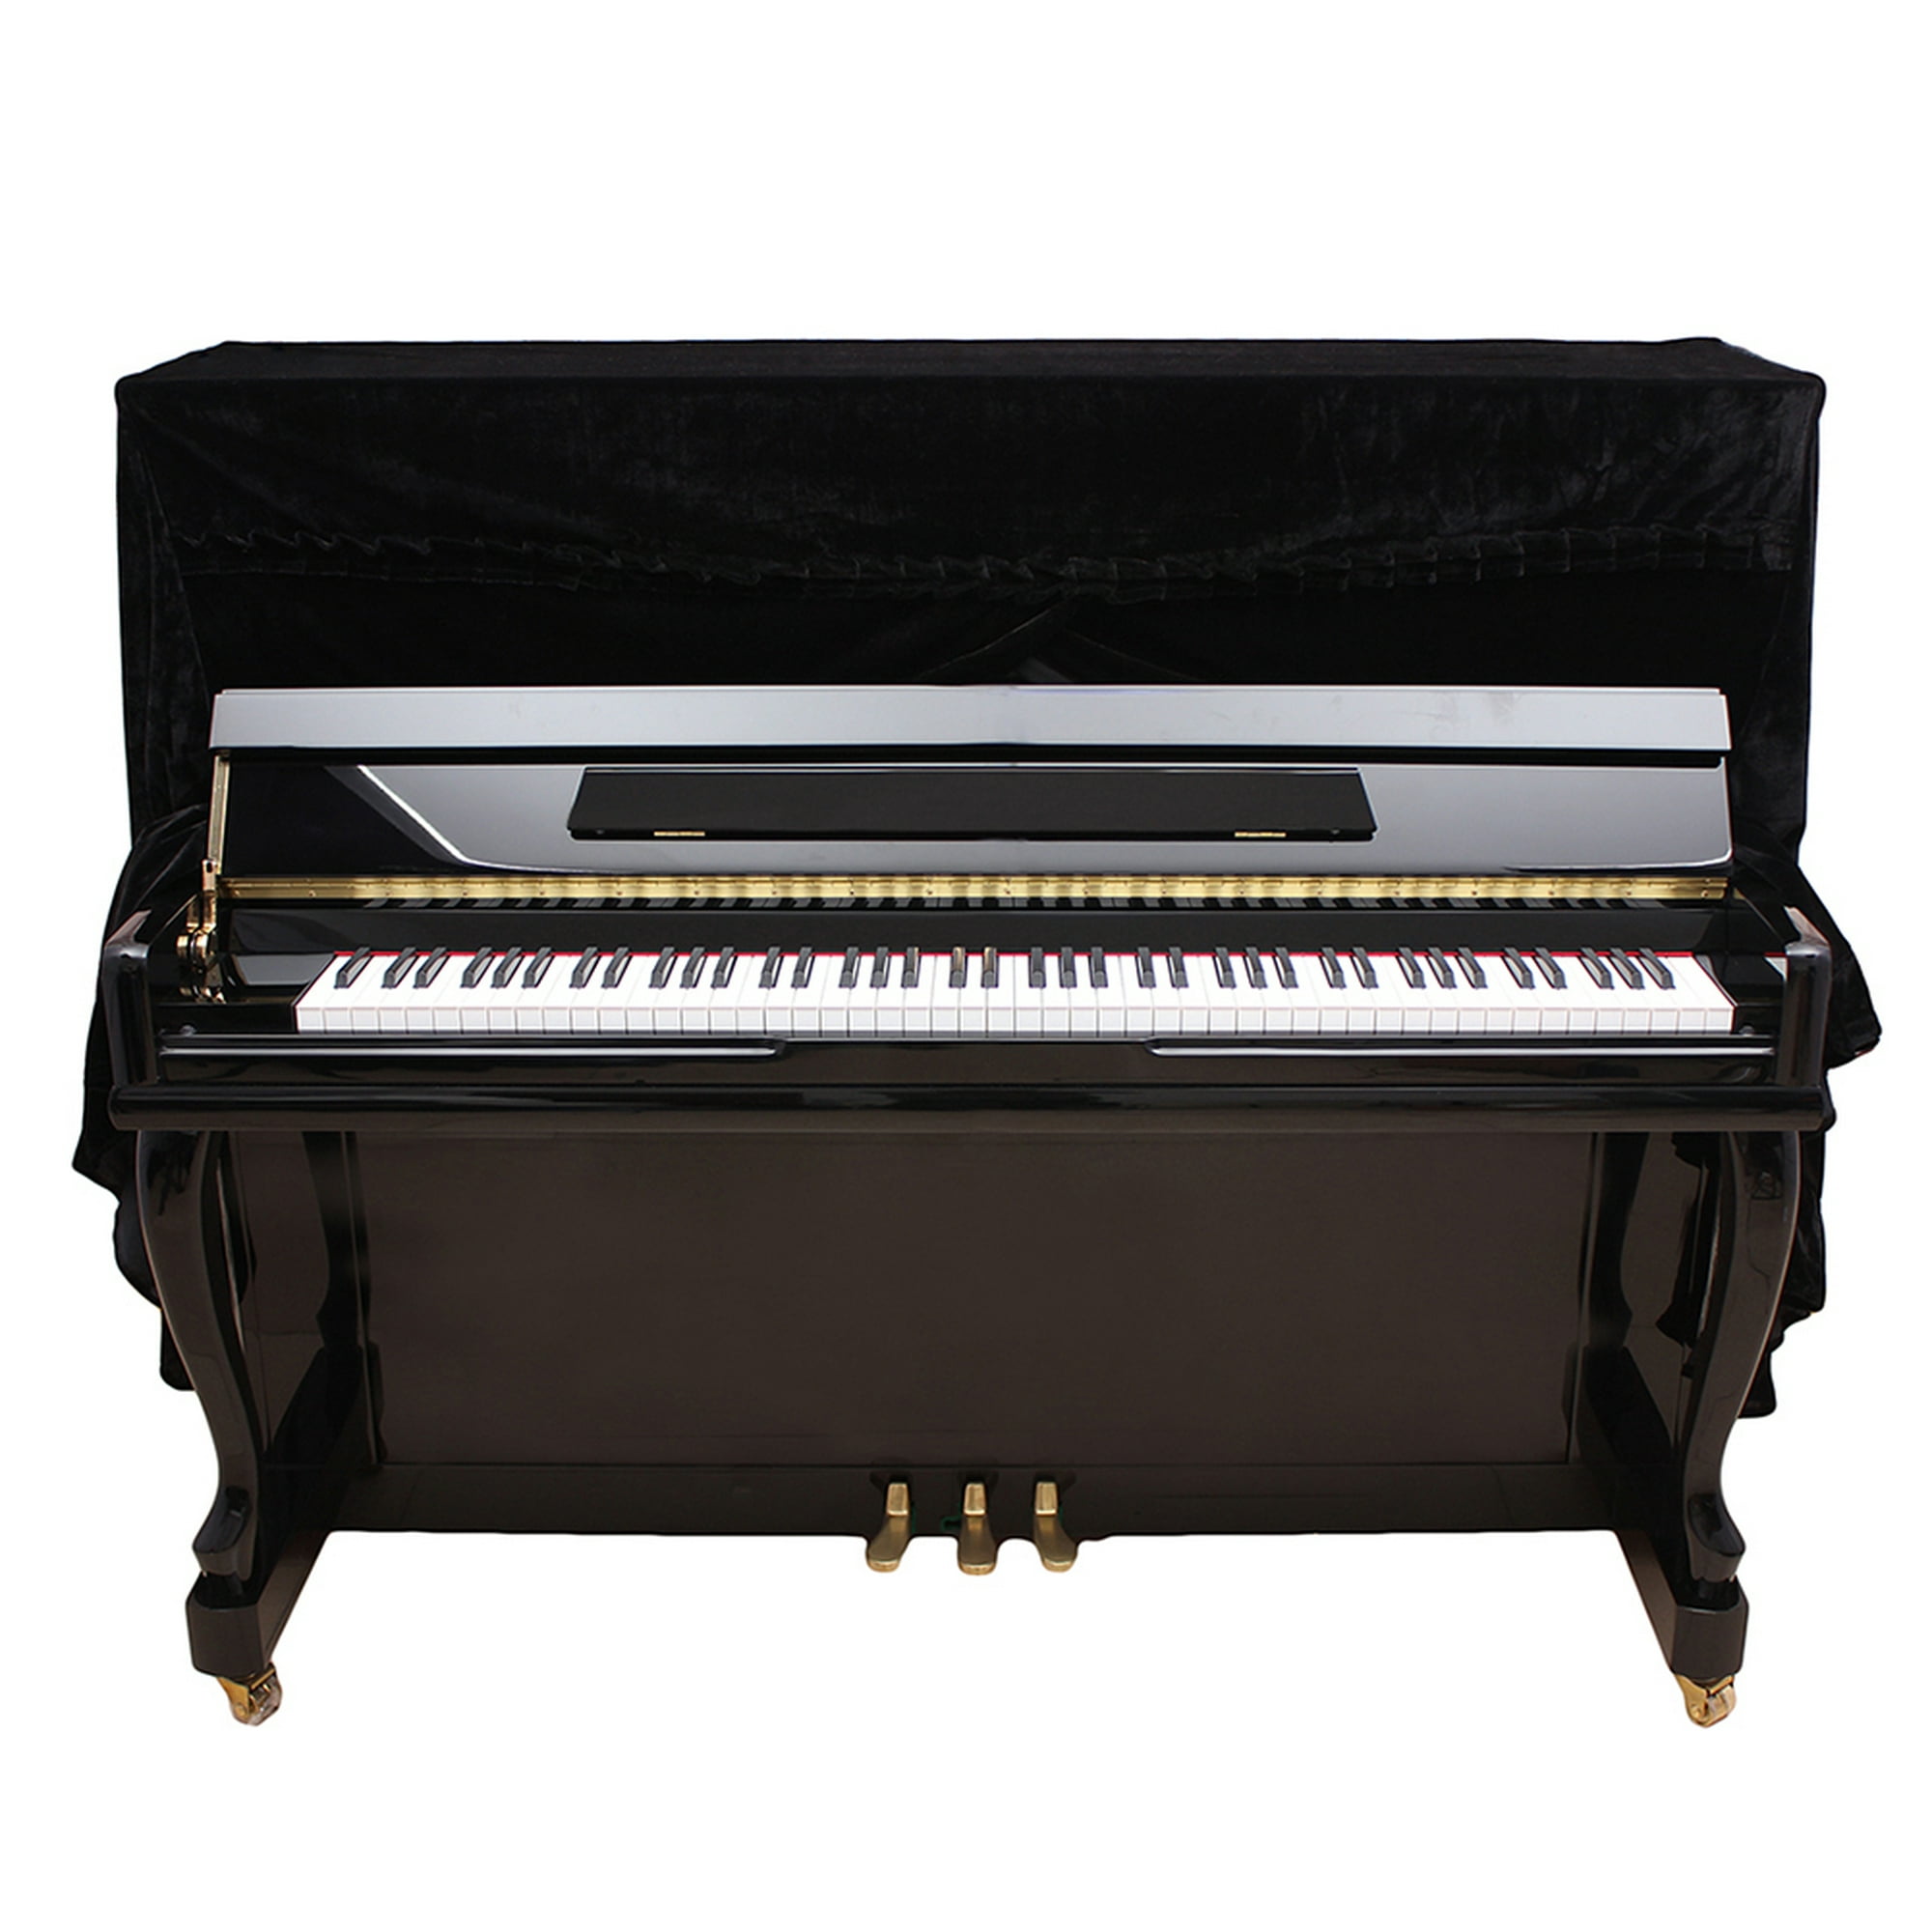 Soporte Base Ajustable Desmontable Proel El80d Teclado Piano Proel EL-80D